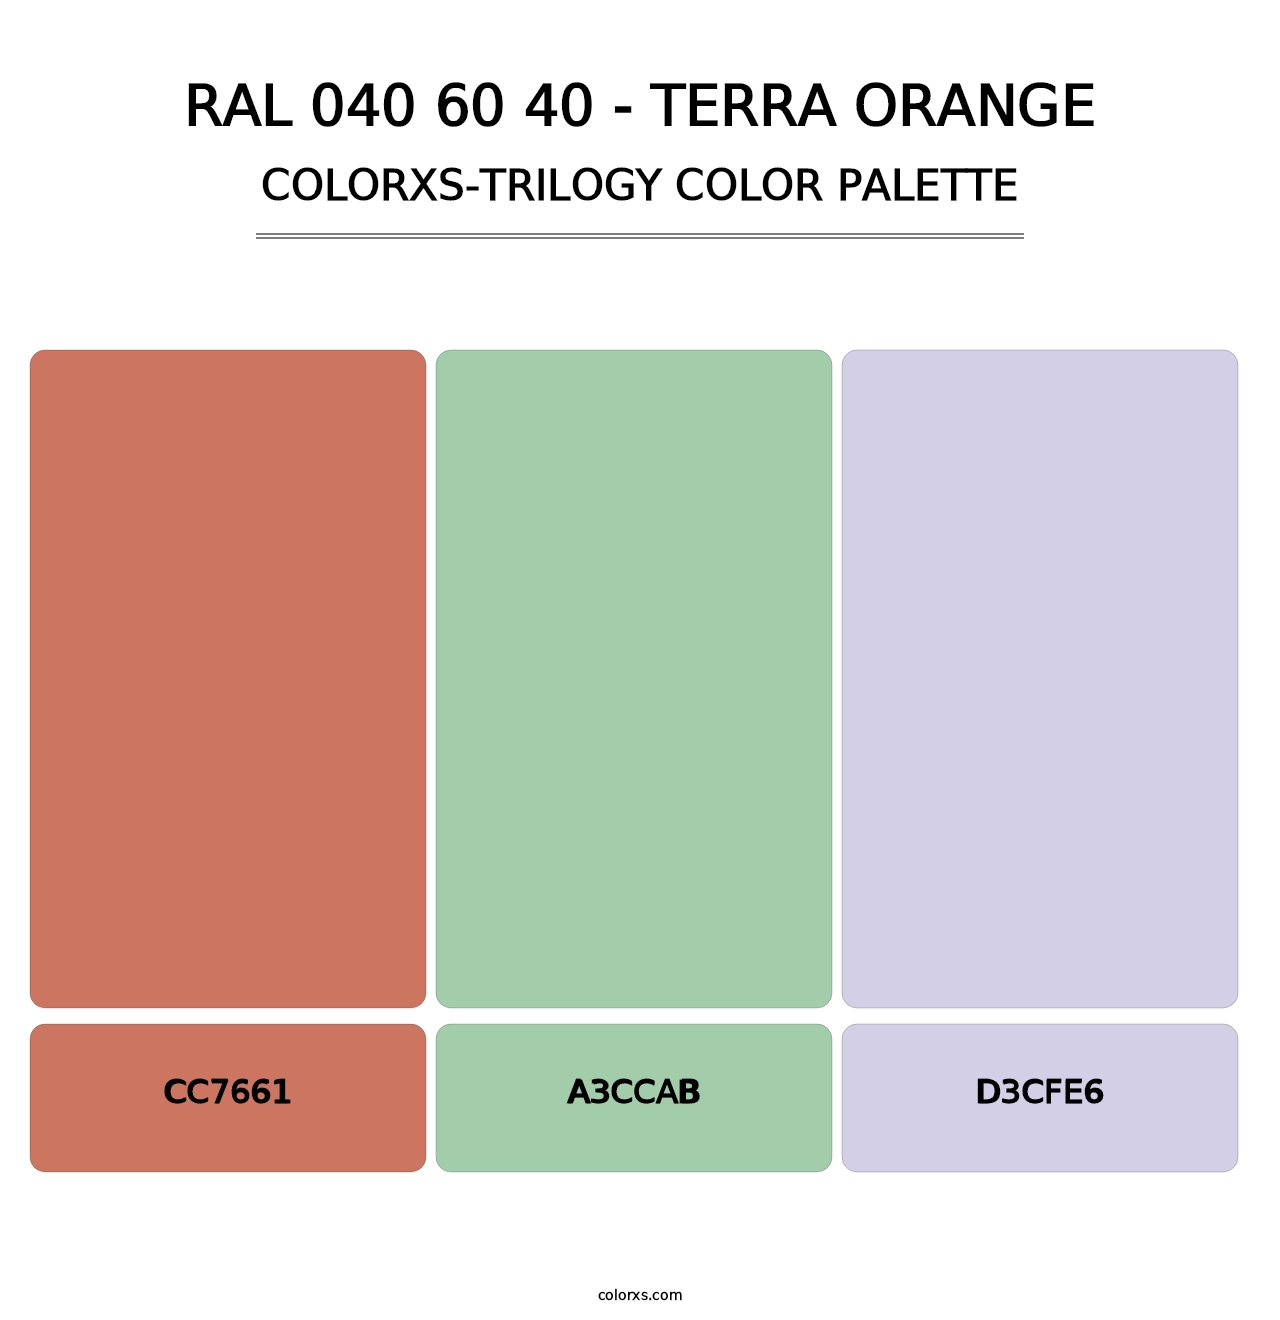 RAL 040 60 40 - Terra Orange - Colorxs Trilogy Palette